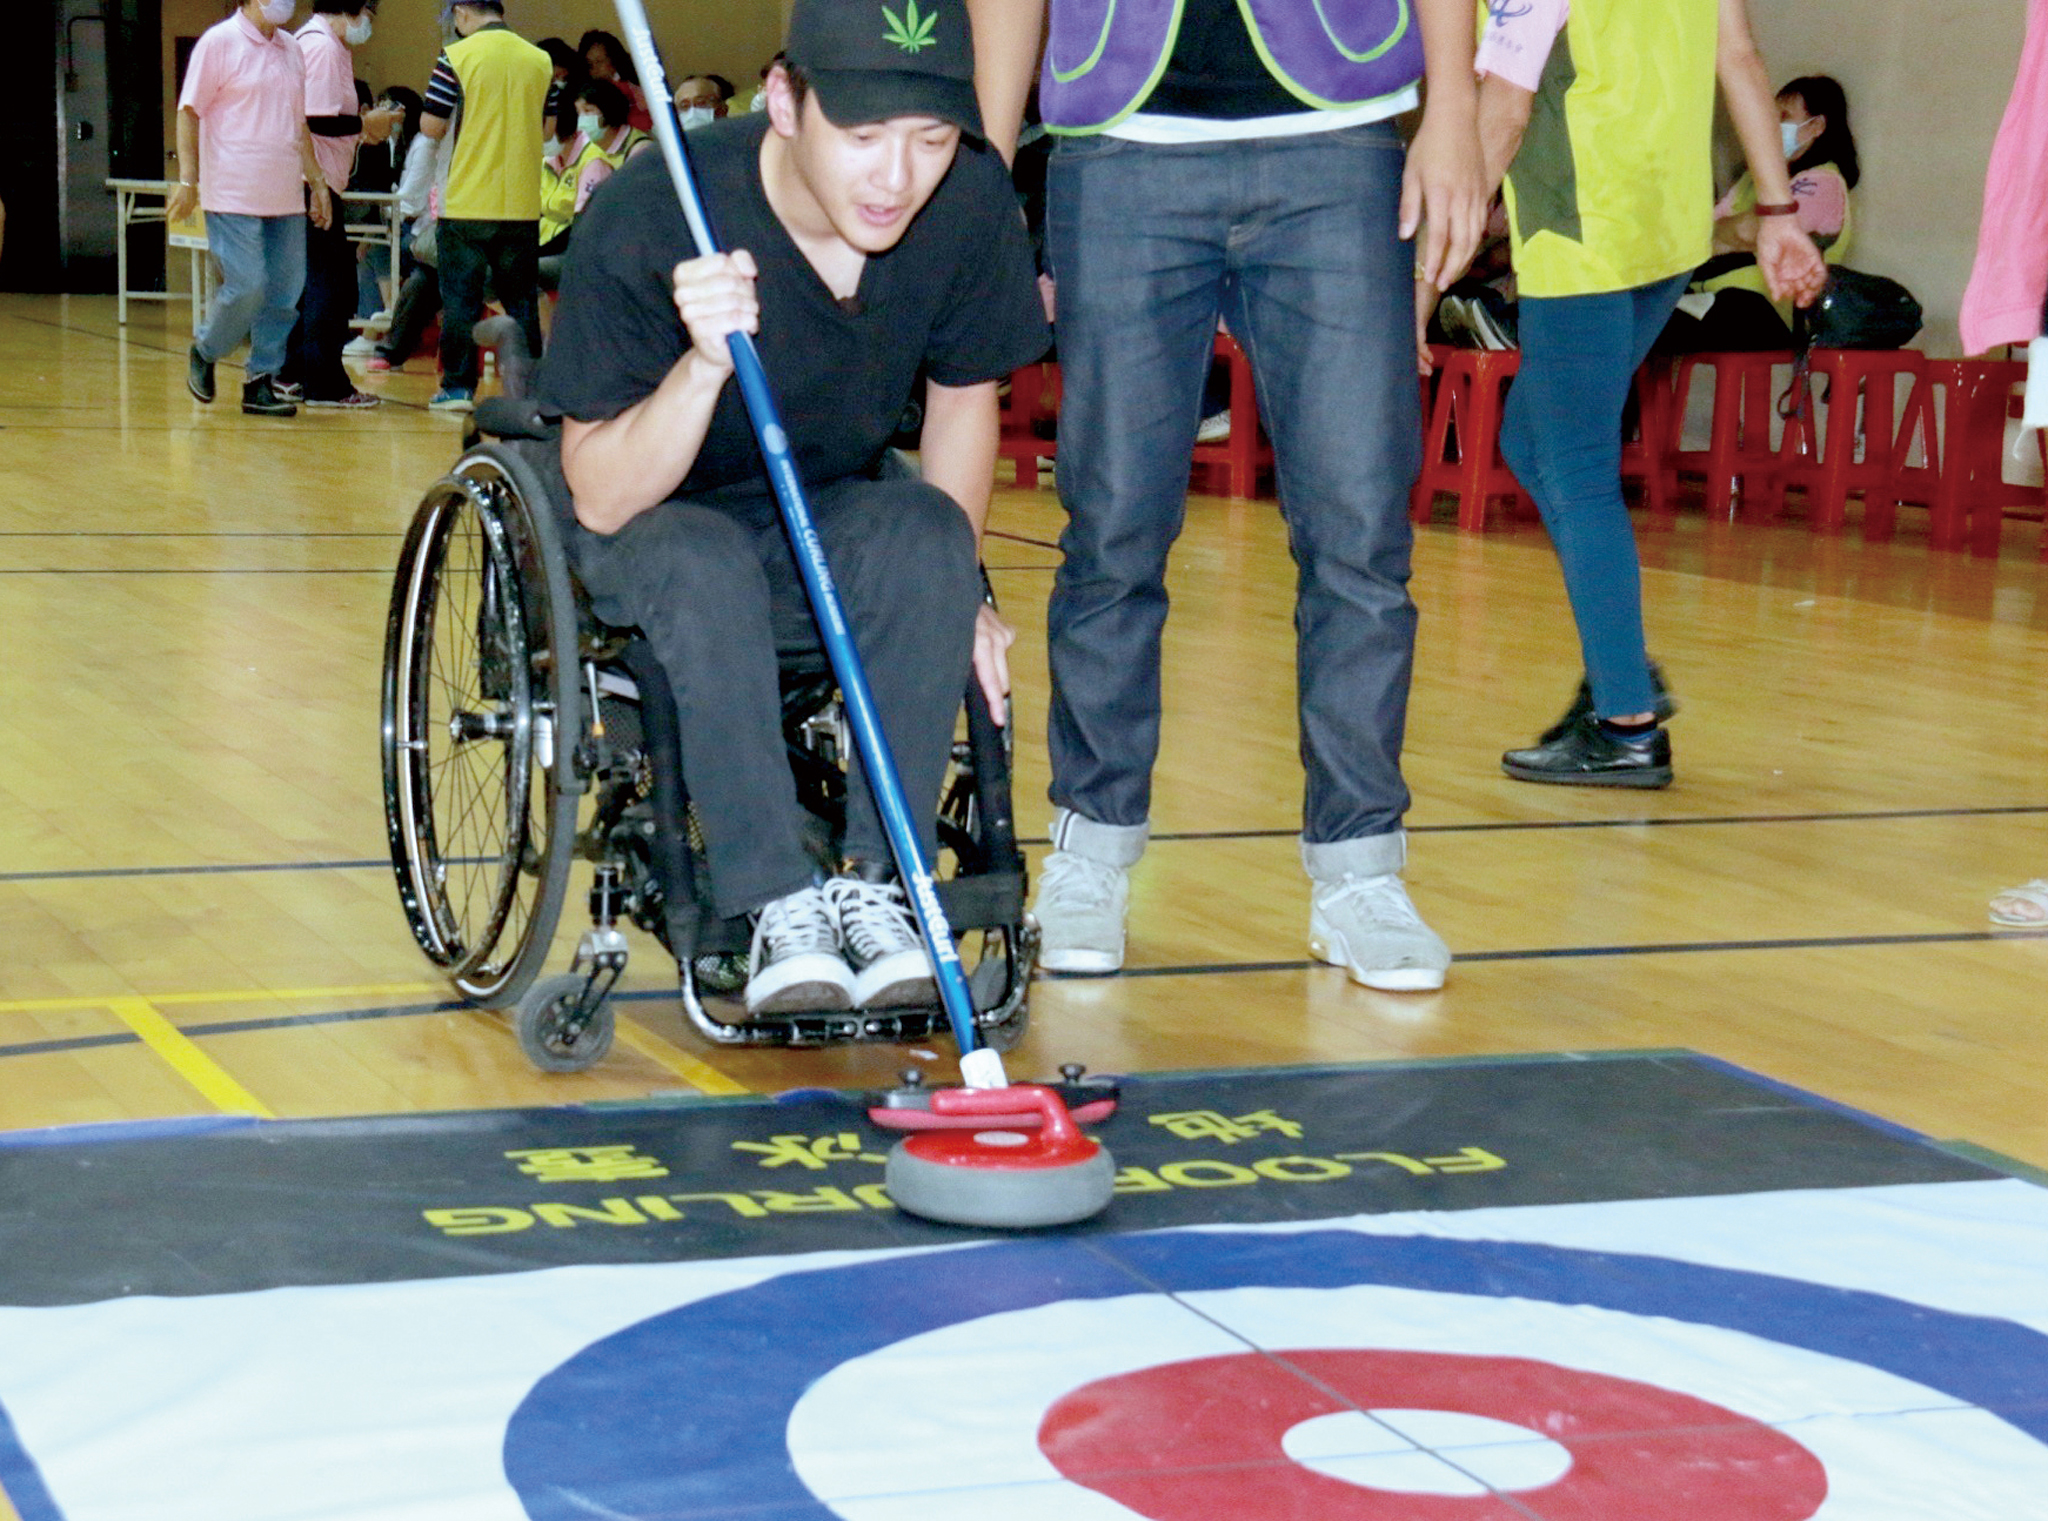 身障朋友參加趣味運動會體驗地板滾球。